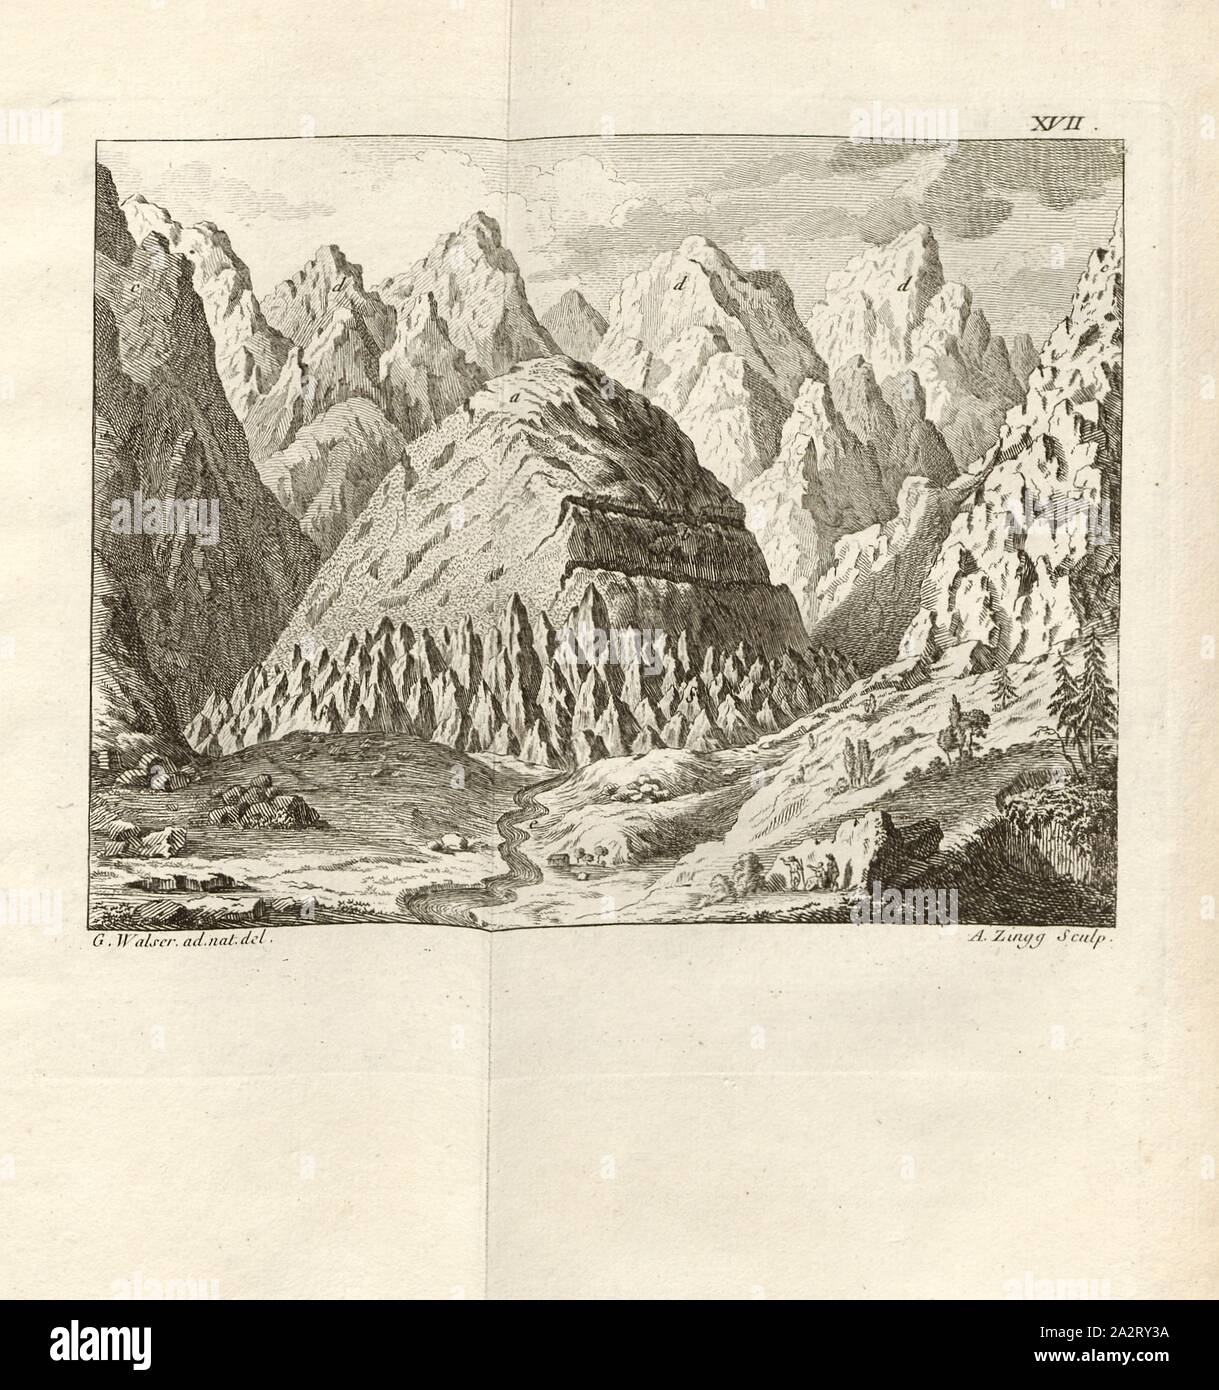 L'damas de Bernina et le Bundes, vue Bernina, signé : G. Walser (ad nat. Del.) ; A. Zingg (couche externe.), fig. 19, XVII, p. 372 après, p. 414, Walser, Gabriel (ad nat. del.) ; Zingg, Adrian (1770), sculptures., Gottlieb Sigmund Gruner Louis-Félix Guinement de Keralio ; : Histoire naturelle des glacieres de Suisse. Paris : Panckoucke, MDCCLXX [1770 Banque D'Images